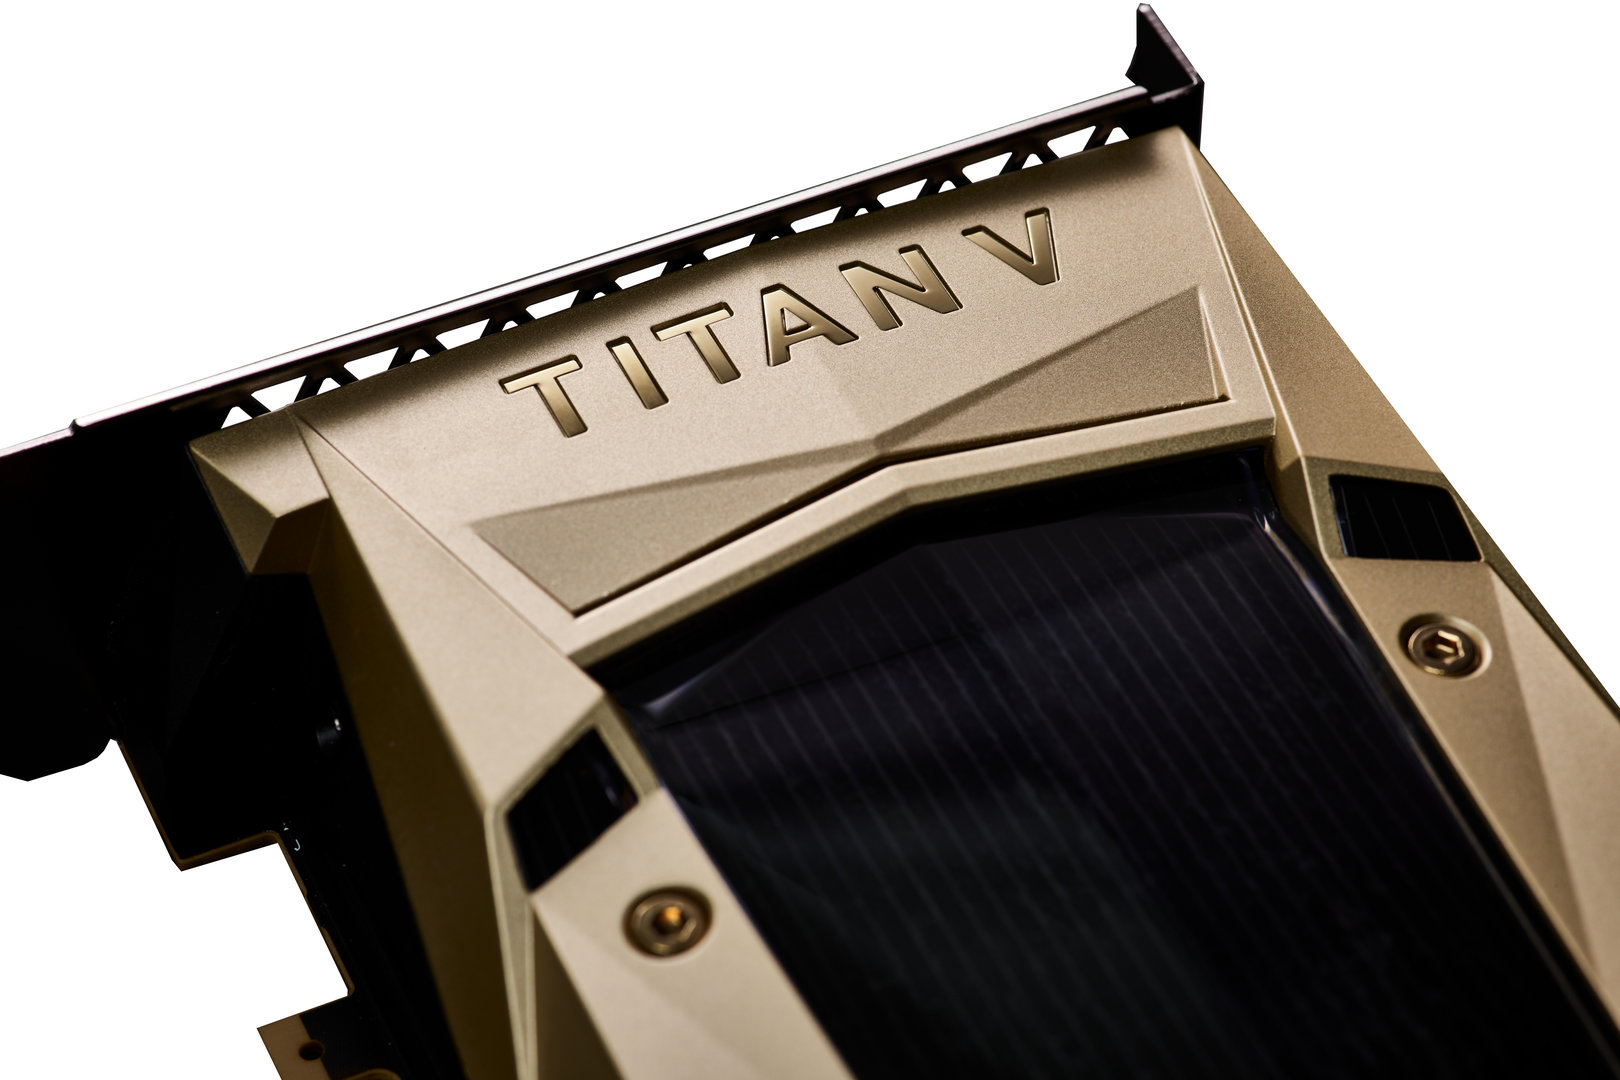 Nvidia Titan V (Volta)